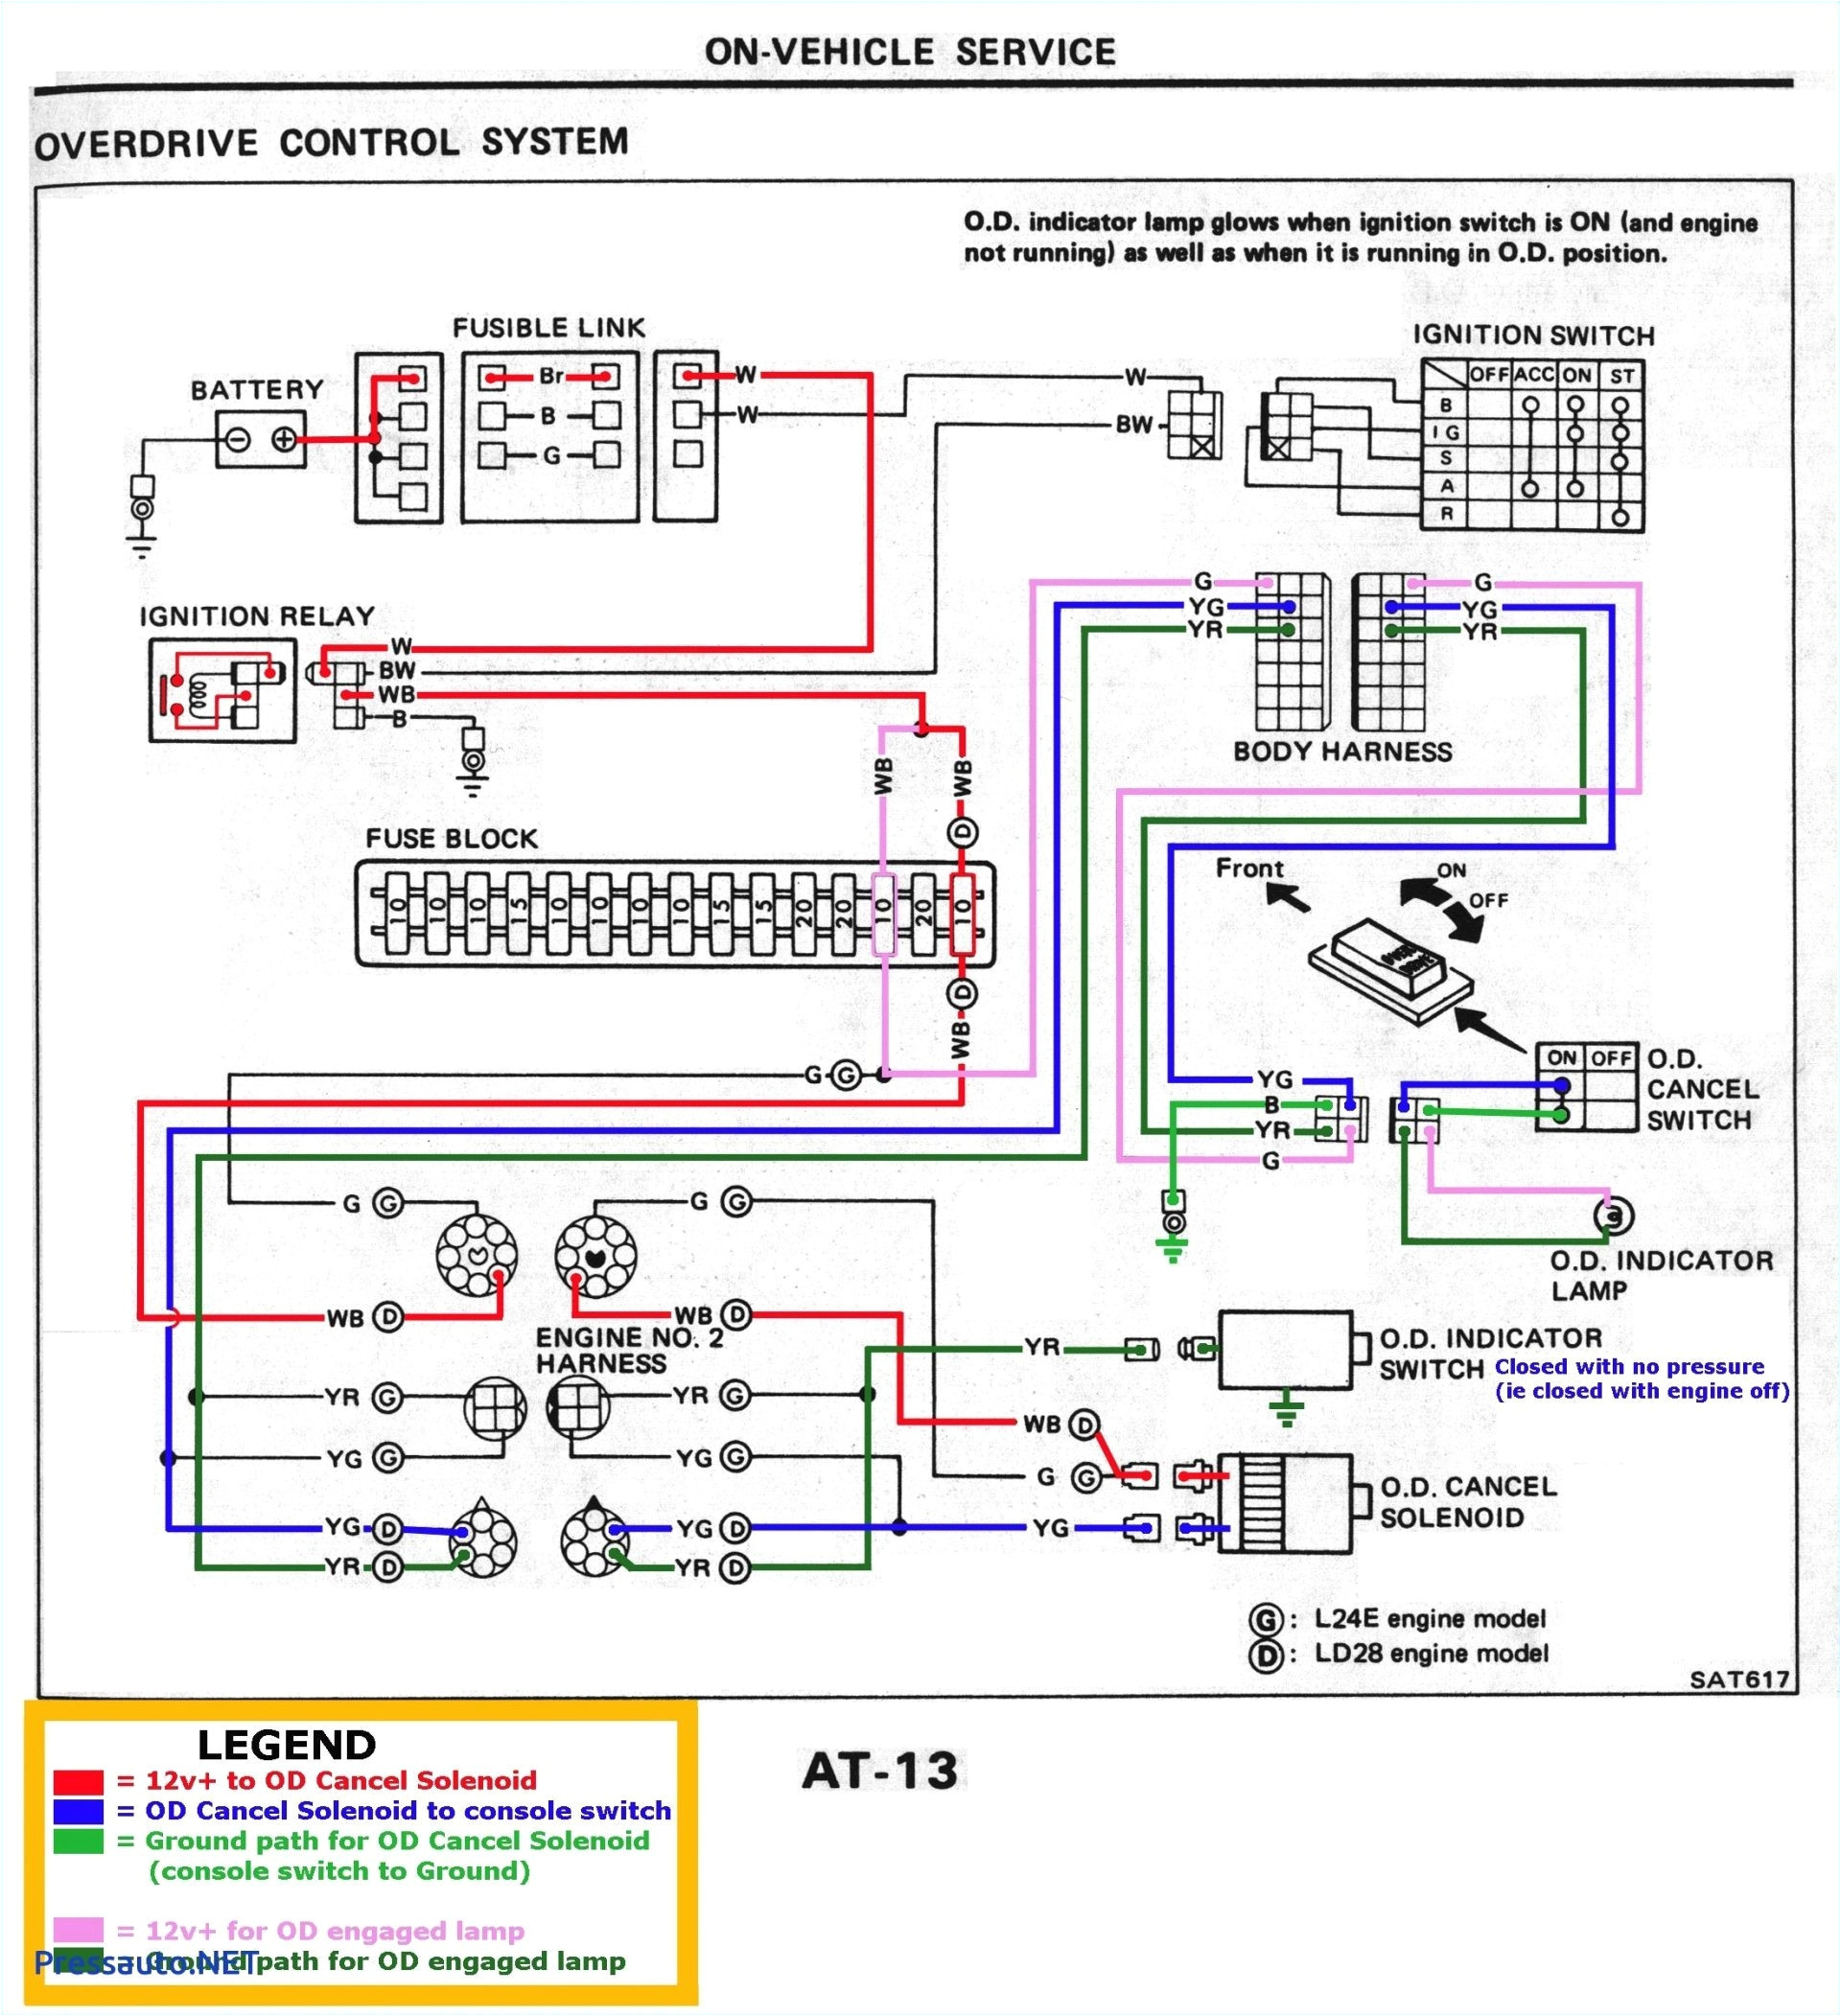 gmcs alternator wiring diagram wiring diagram databasechevy 3 wire alternator internal voltameter diagram wiring diagram gmcs